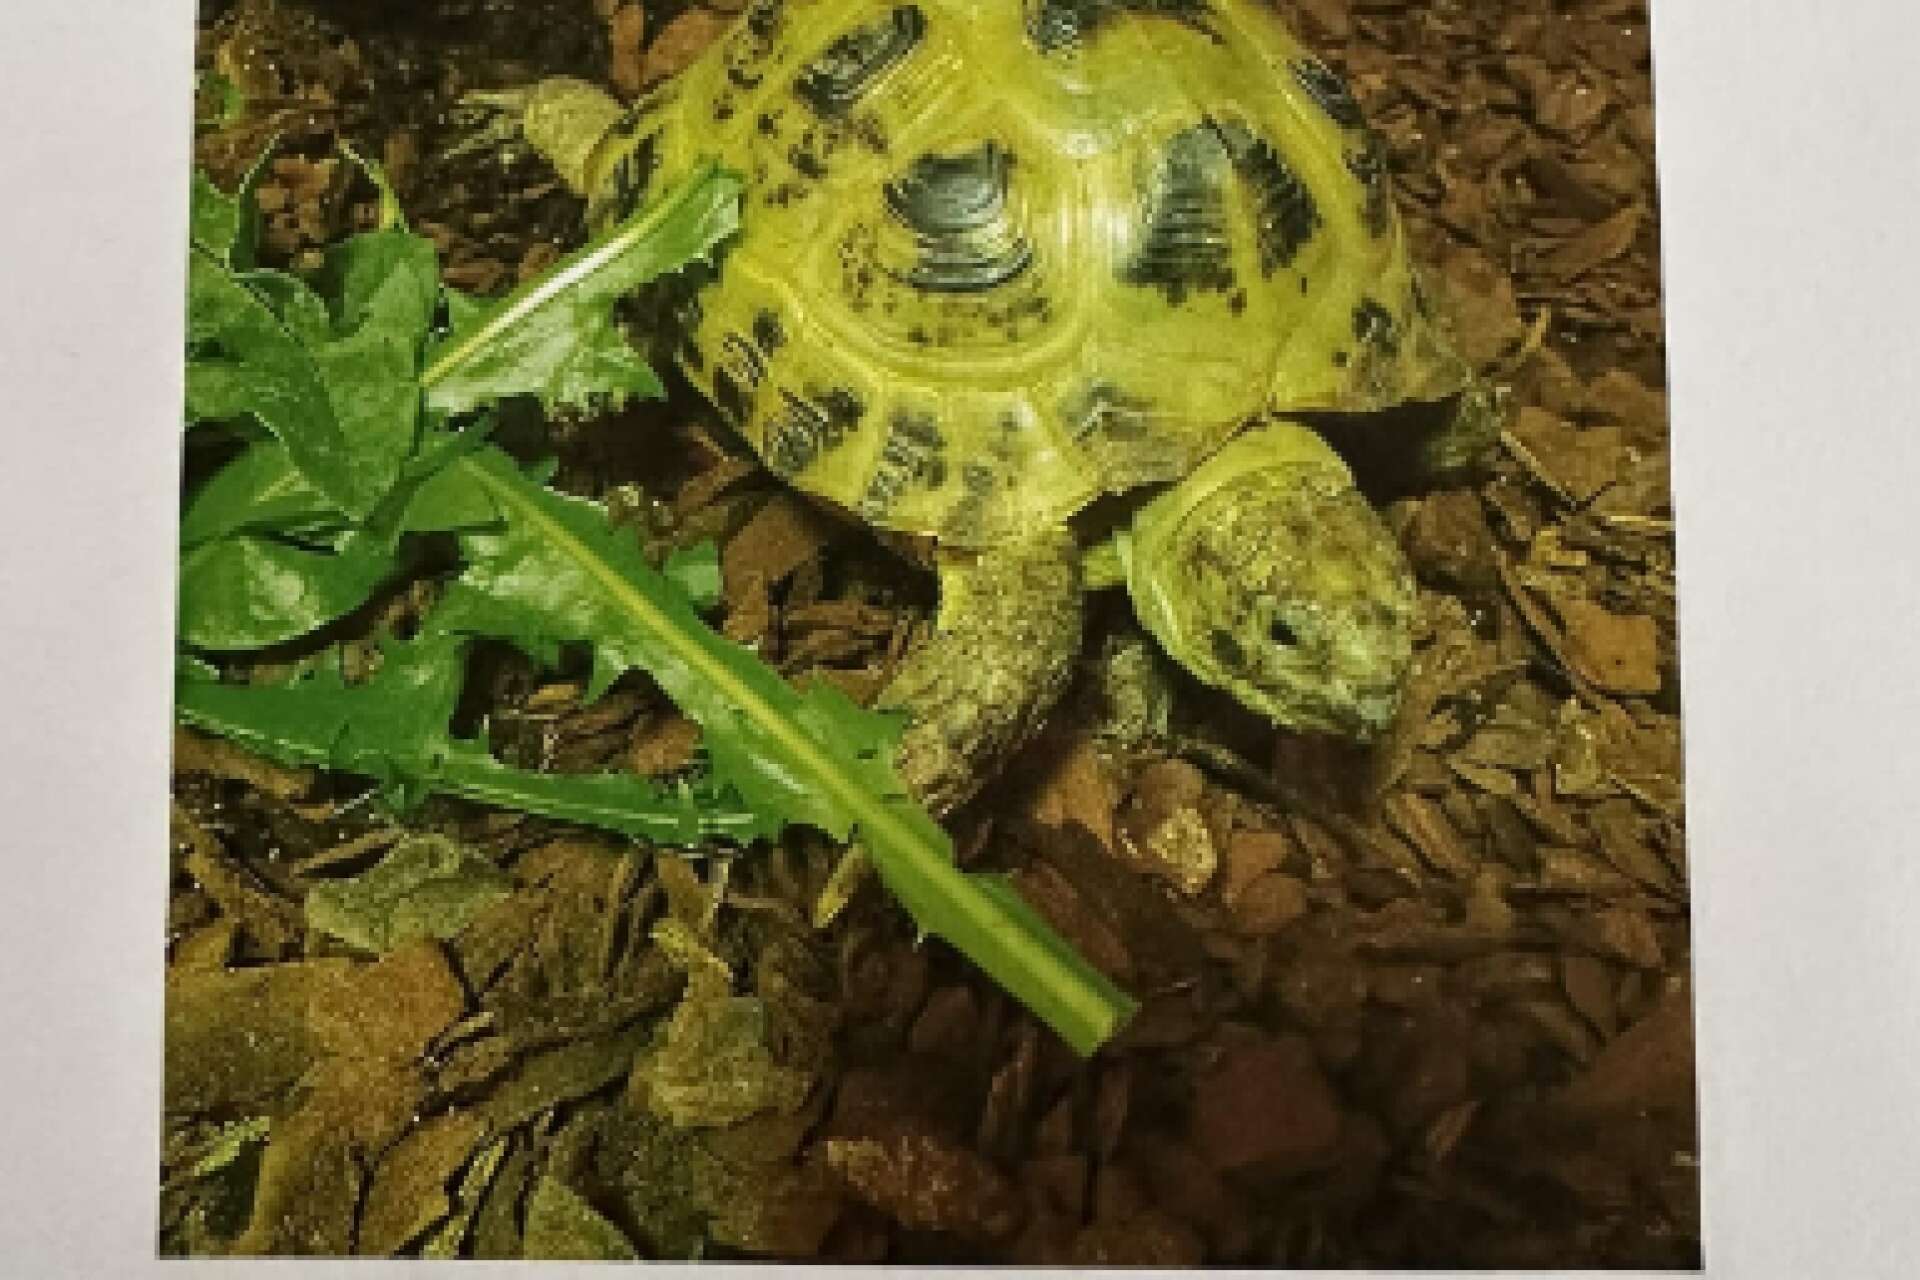 Den här sköldpaddan försvann från ett villaområde i Äng Ed förra veckan och är fortfarande på rymmen.